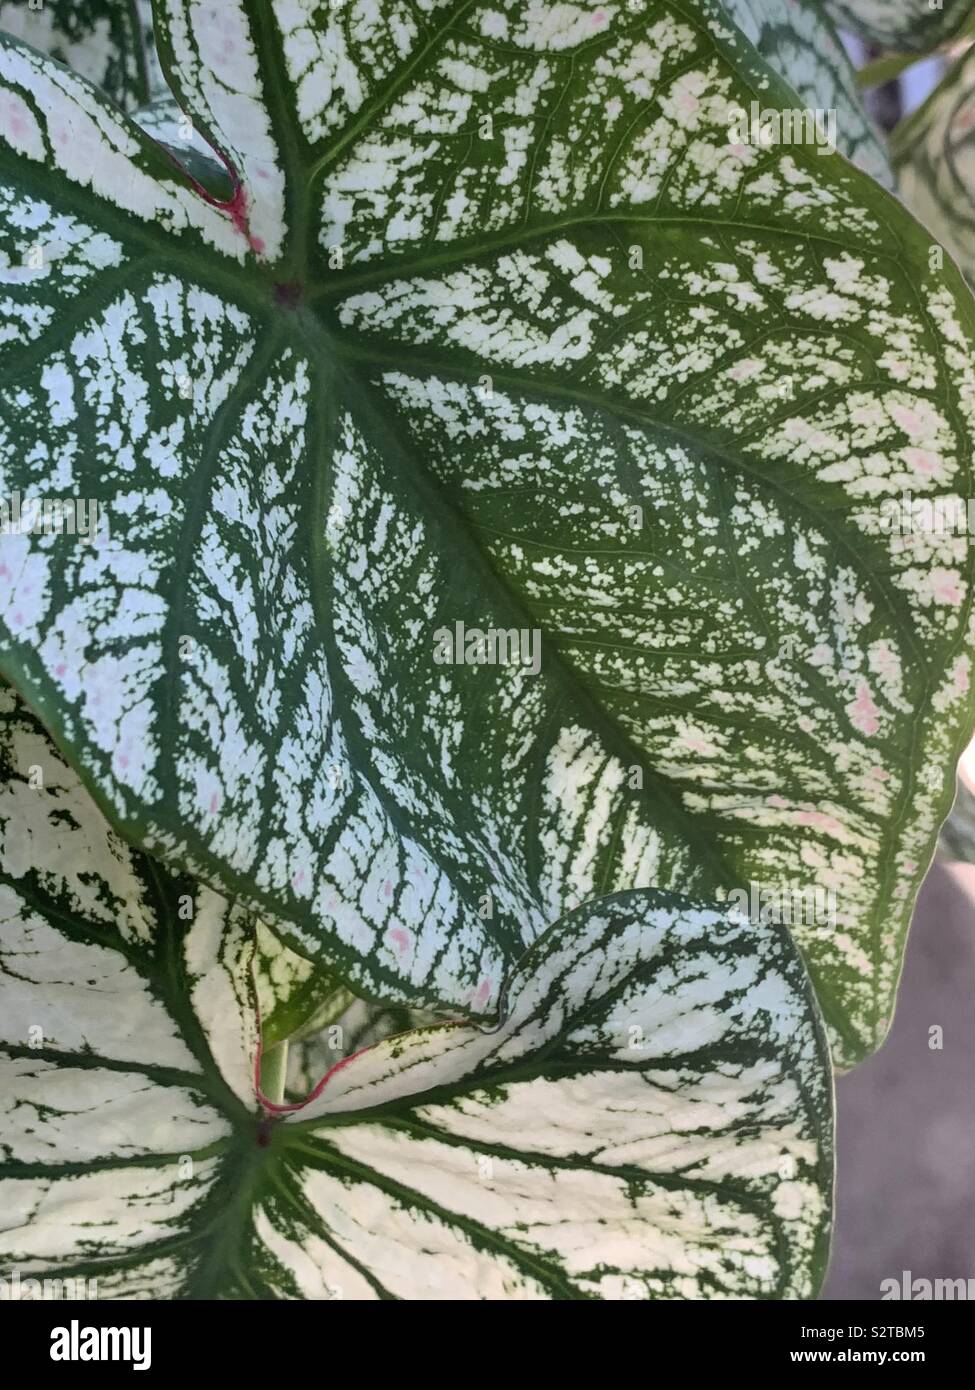 Grün und Weiß caladium Blätter Stockfoto